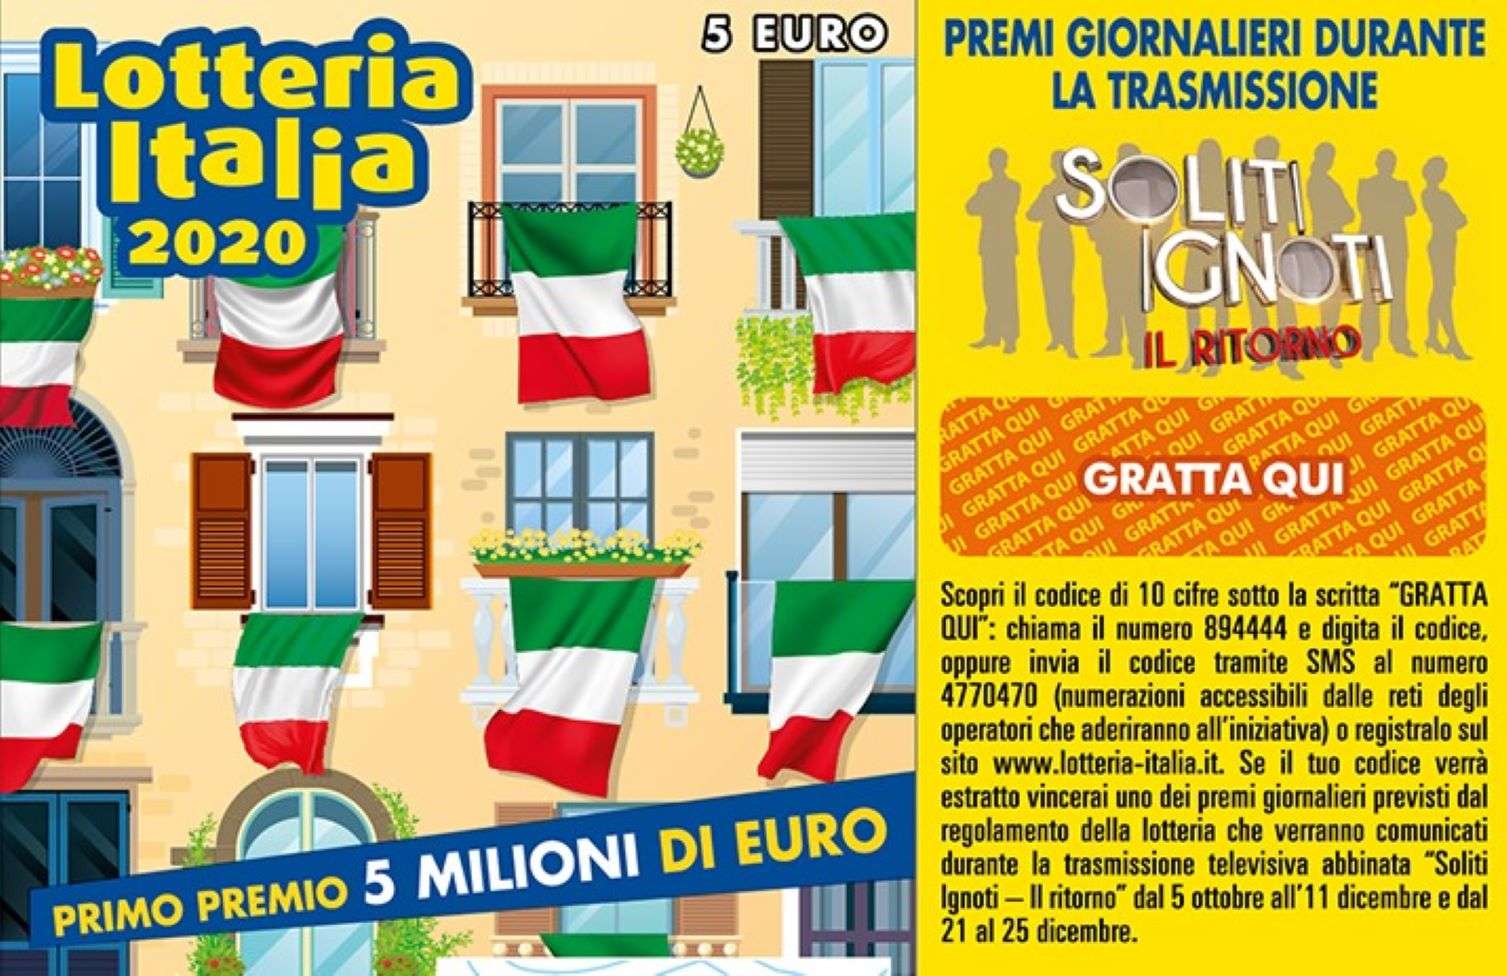 Biglietti della lotteria, a Torino venduti 250mila tagliandi